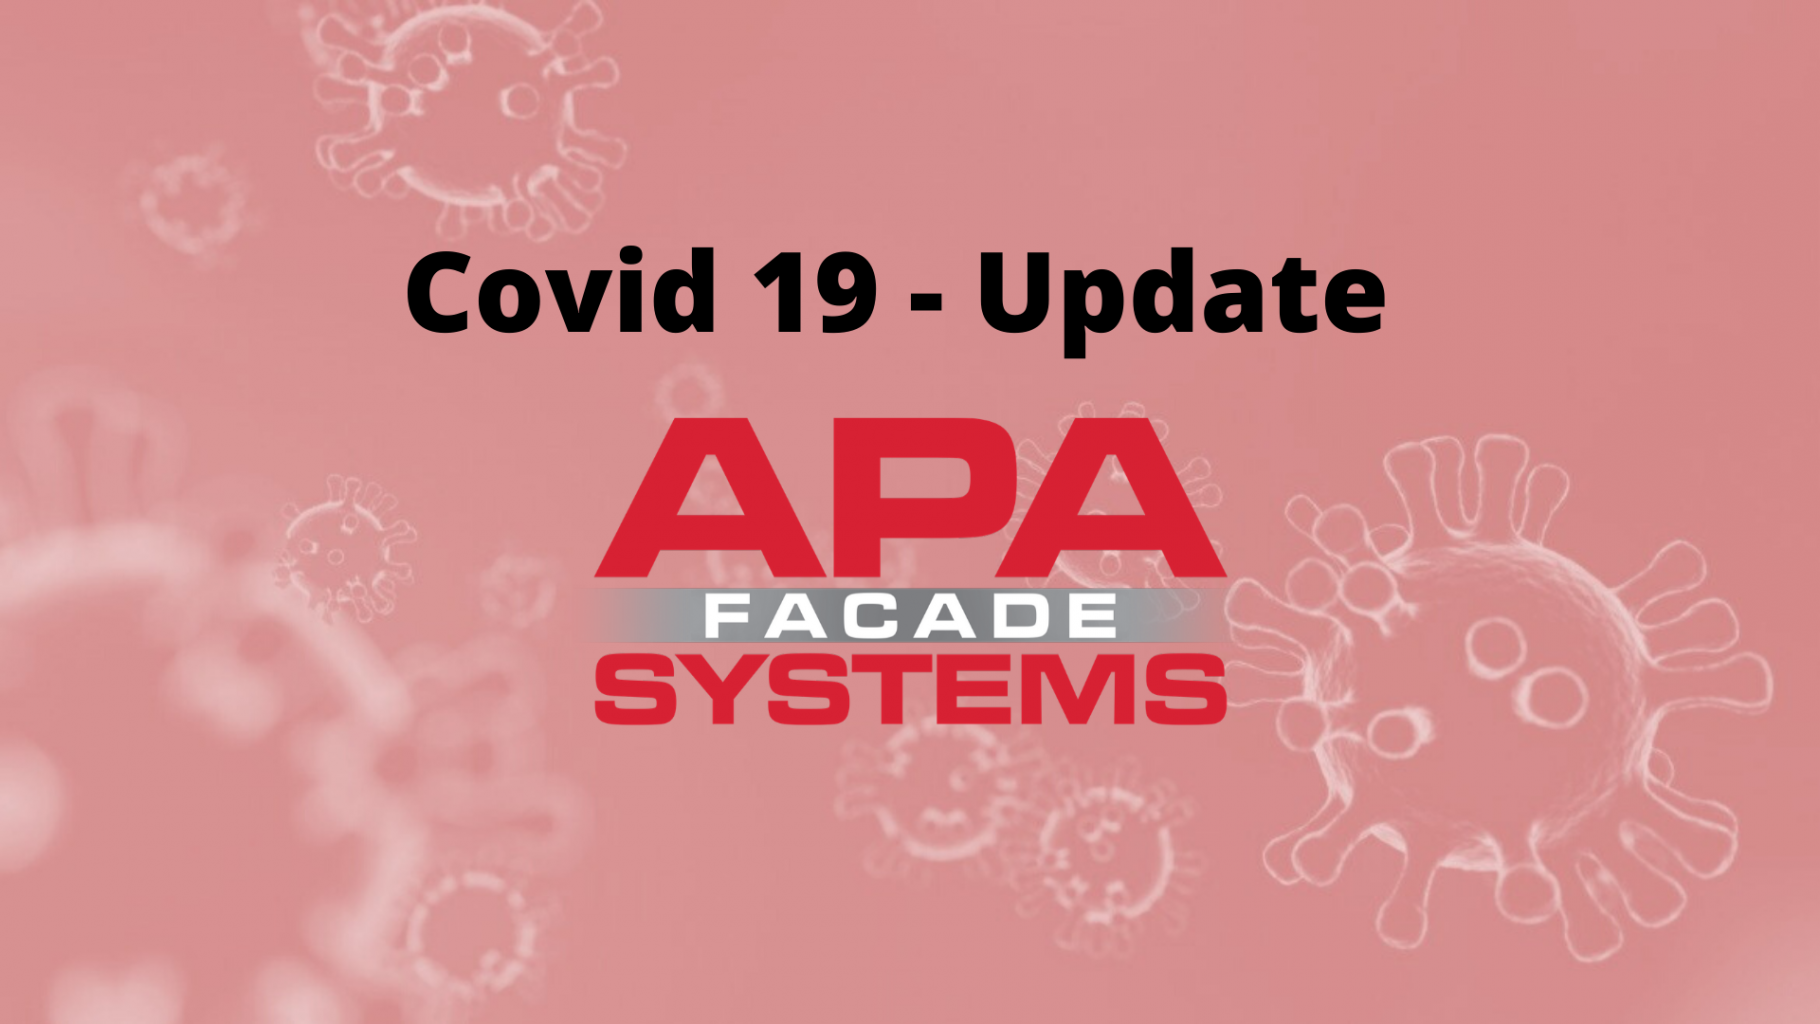 Covid 19 - Update